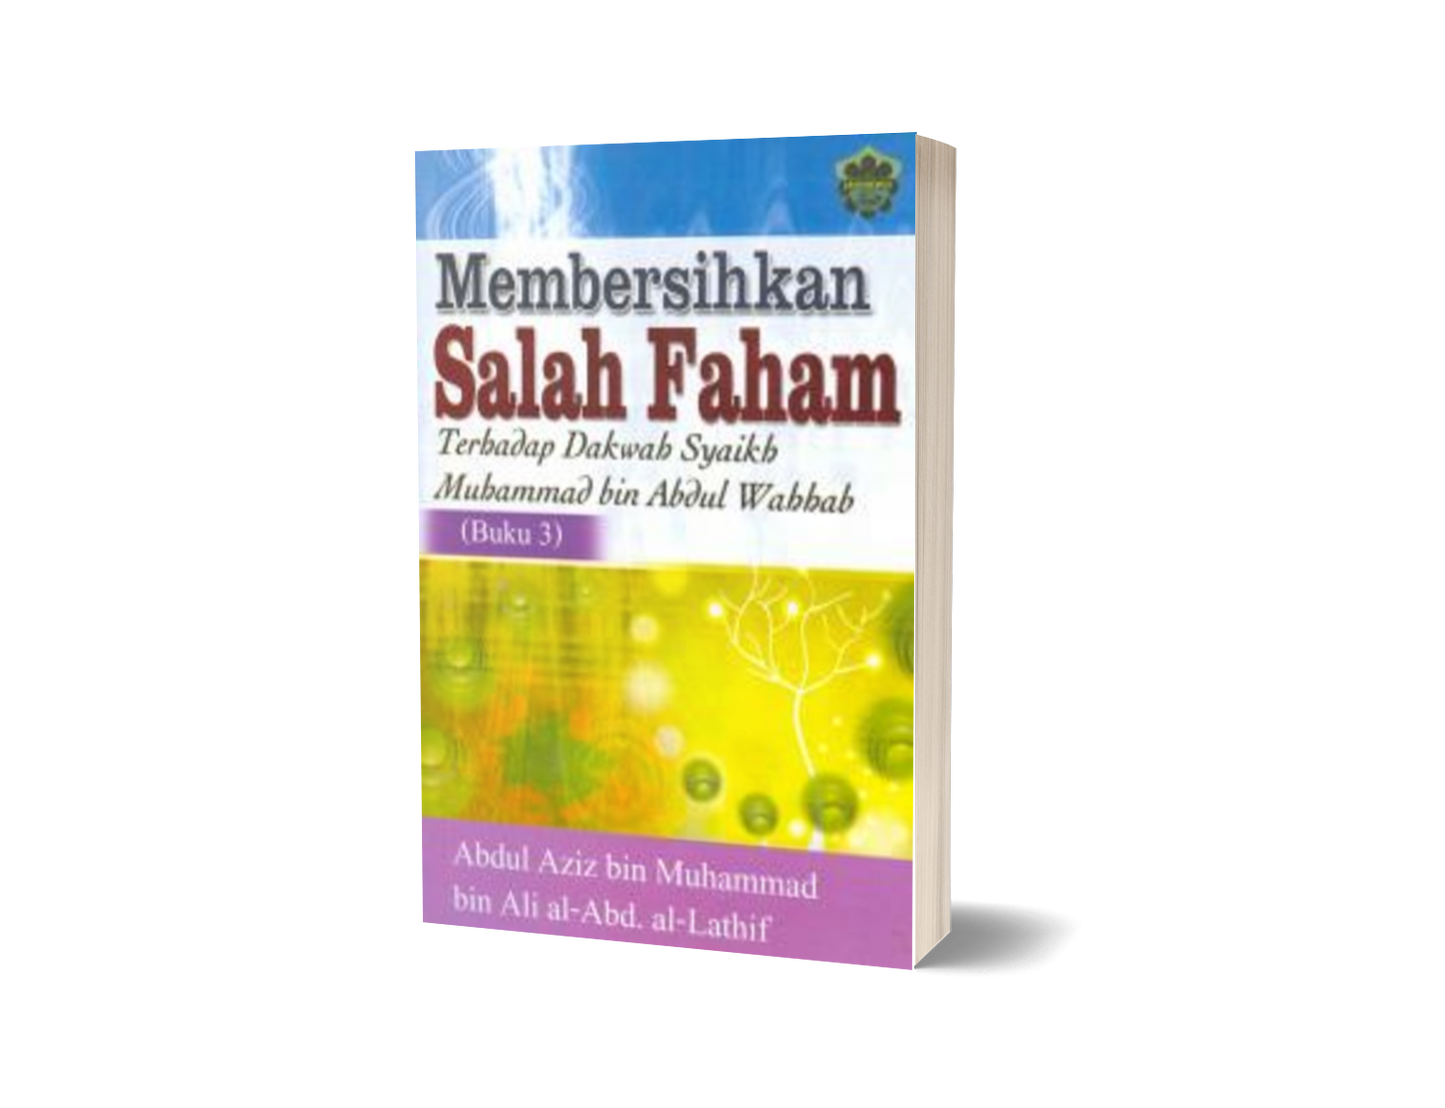 Membersihkan Salah Faham Terhadap Dakwah Syaikh Muhammad Bin Abdul Wahhab (Buku 3)